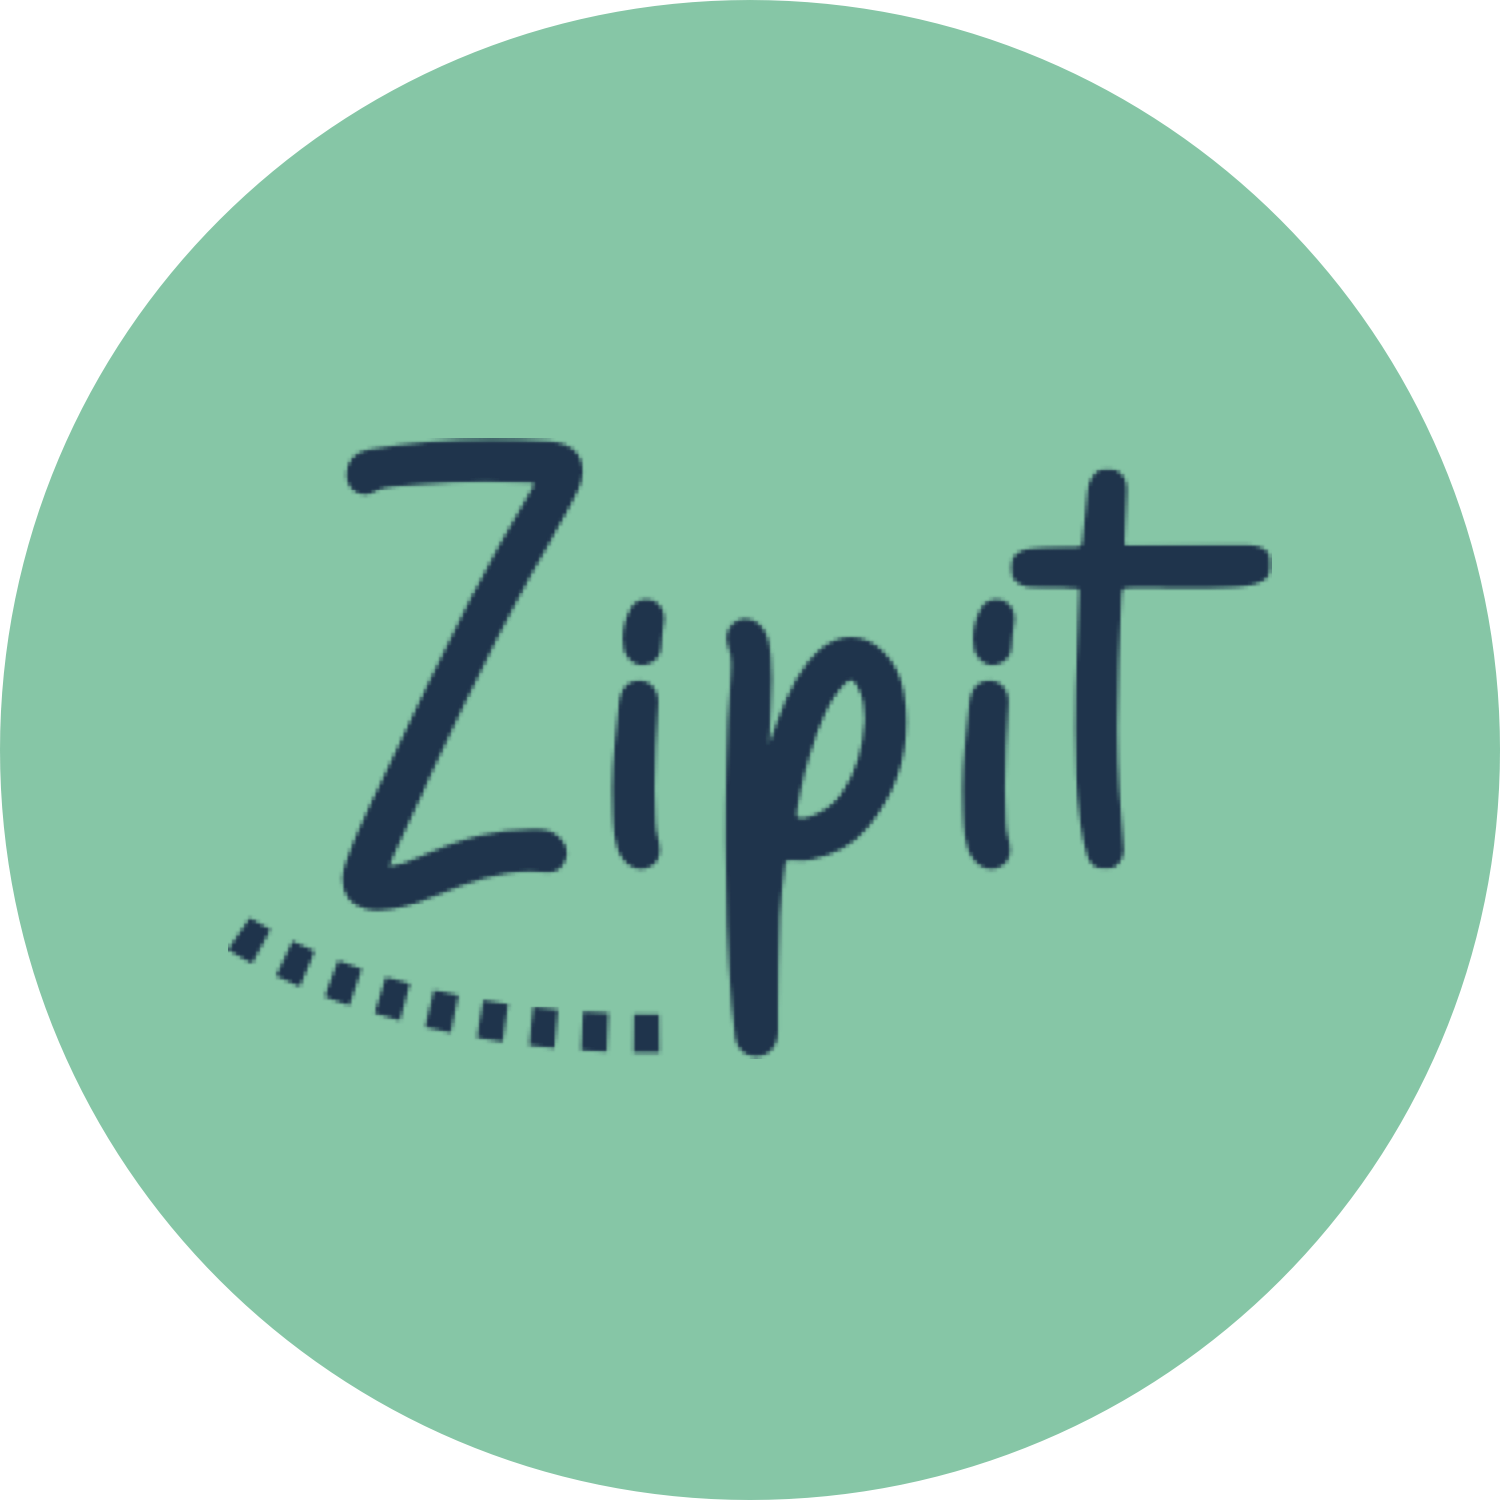 Zipit